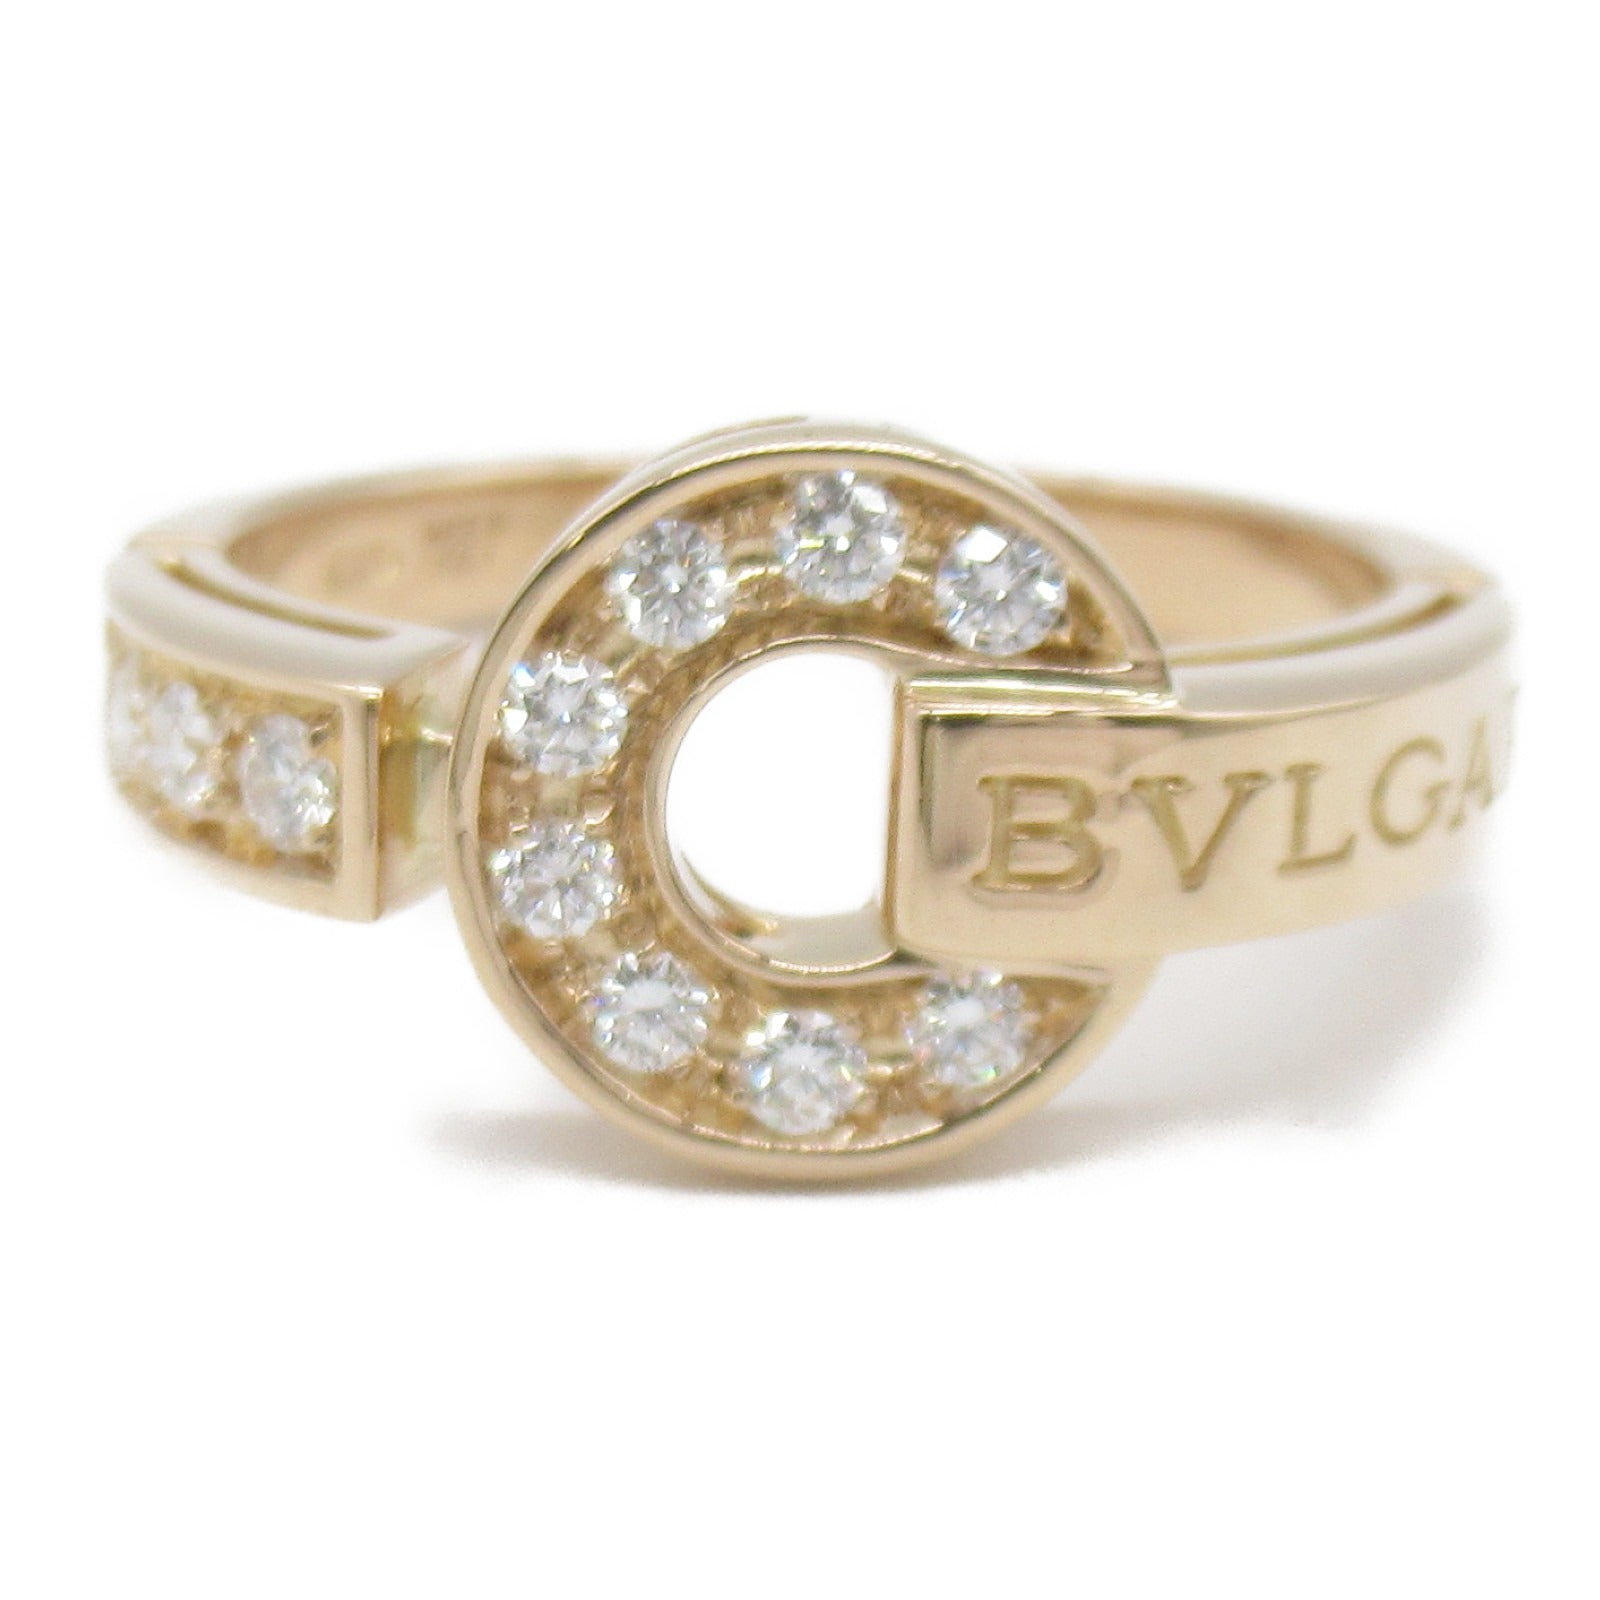 Bulgari BVLGARI n Ring Ring Ring Ring Jewelry K18PG (Pink G) Diamond  Cleaner